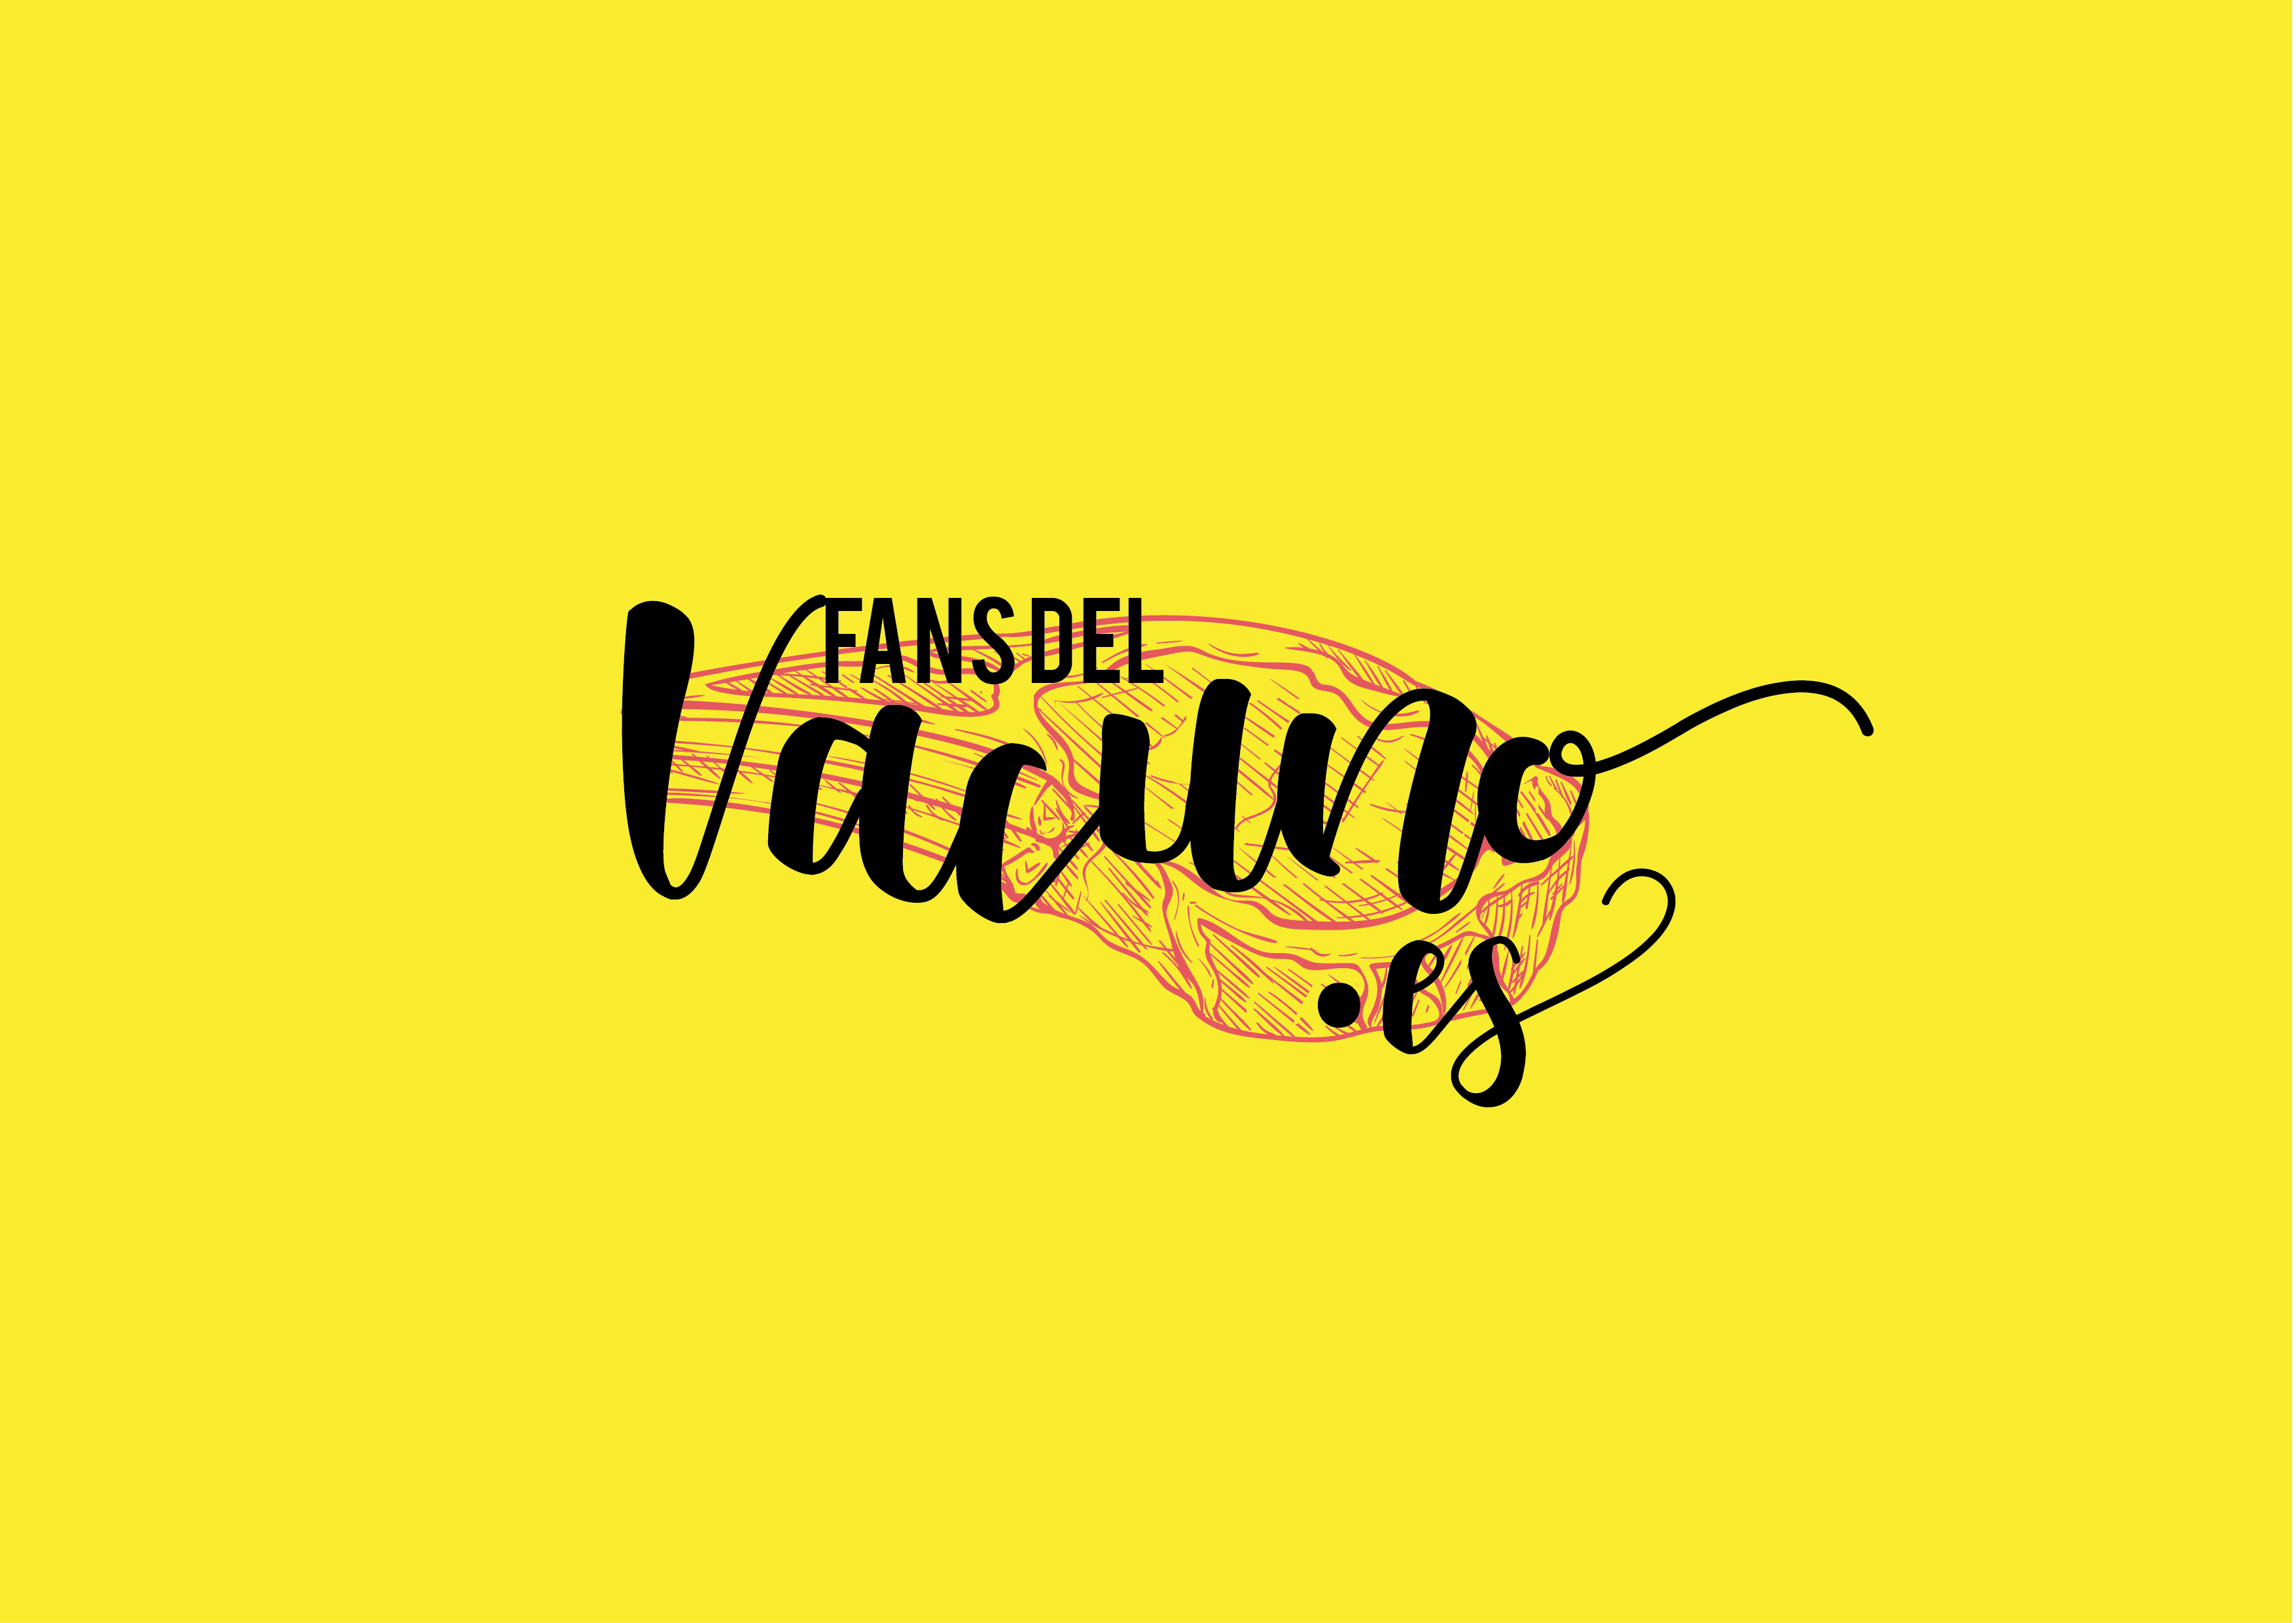 Provacuno llança la campanya #FansdelVacuno per fomentar el consum de carn a Espanya